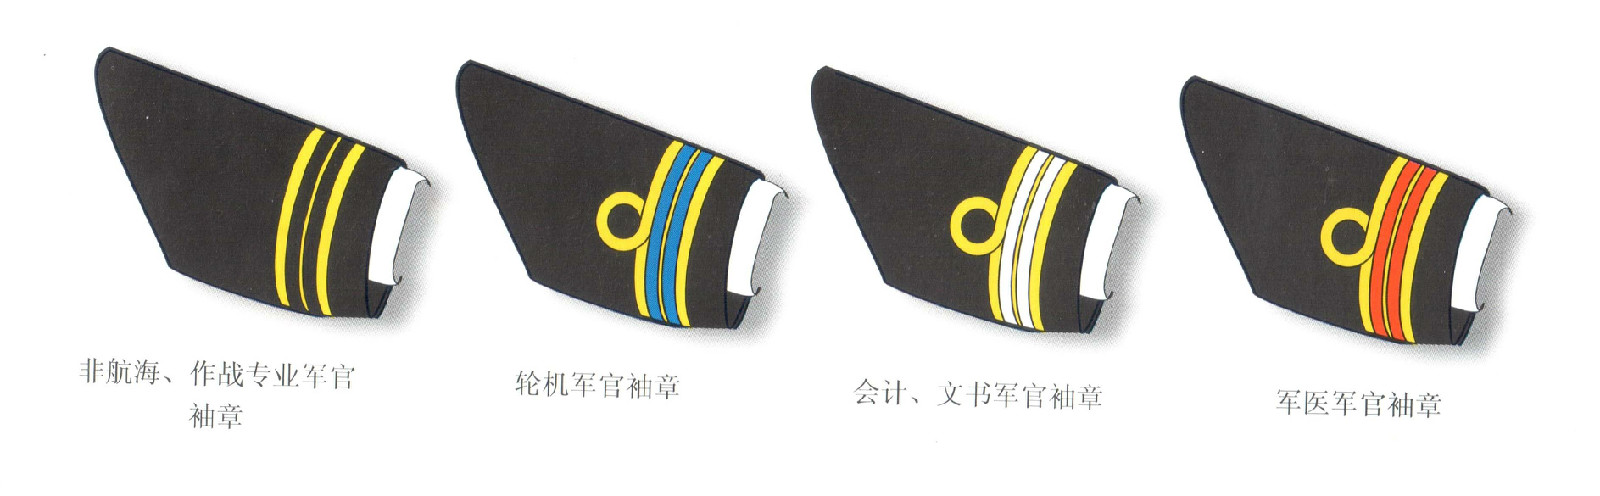 清末海軍不同職能軍官袖章